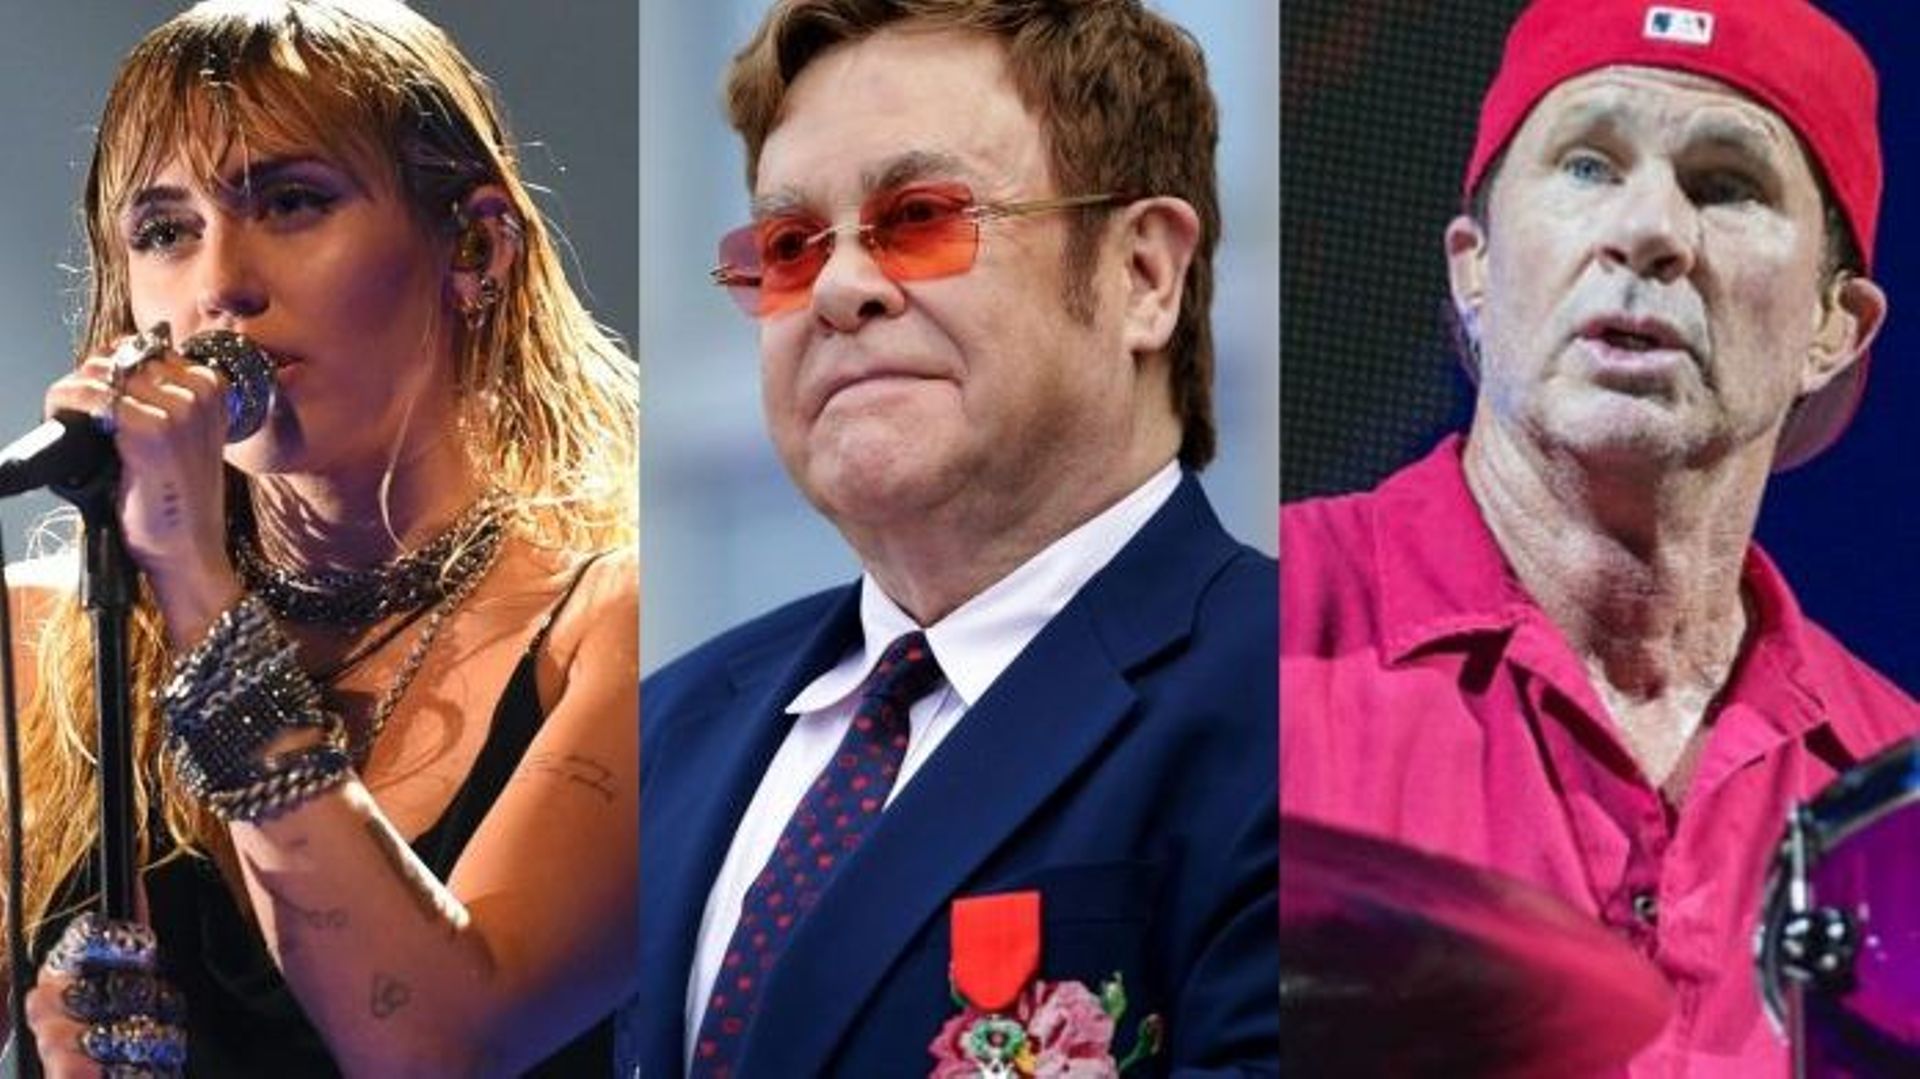 Miley Cyrus / Elton John / Chad Smith